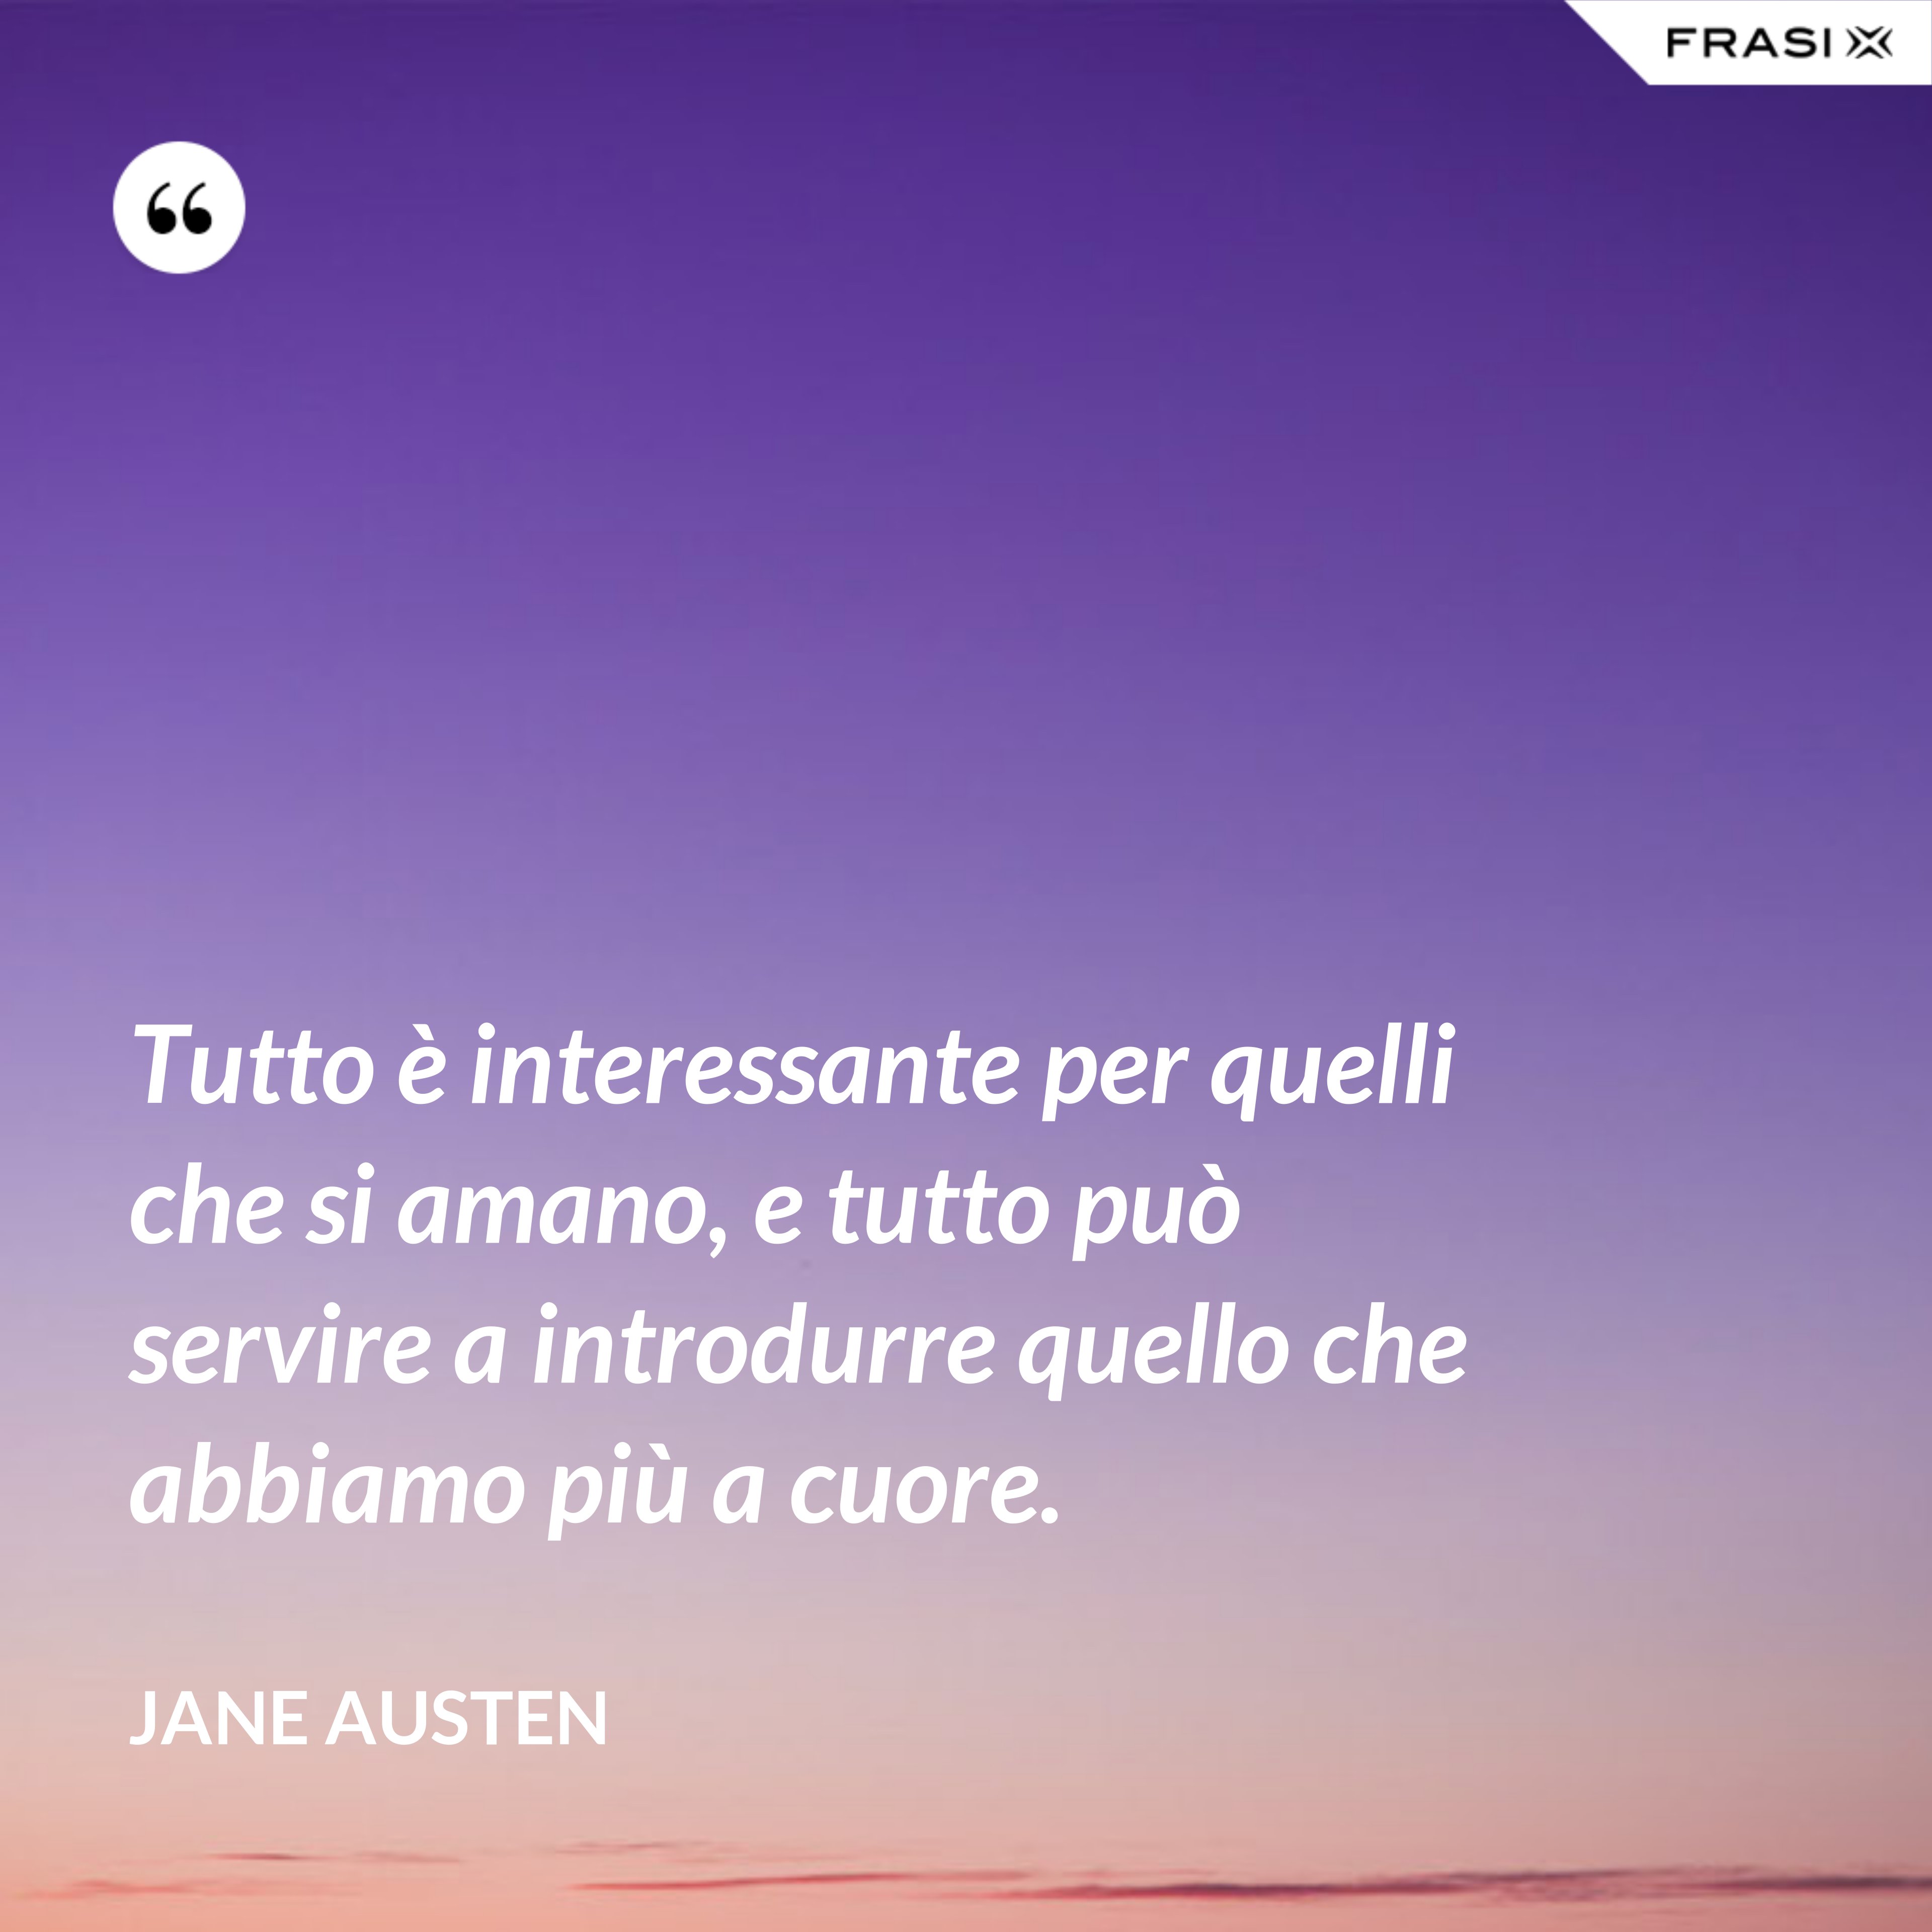 Tutto è interessante per quelli che si amano, e tutto può servire a introdurre quello che abbiamo più a cuore. - Jane Austen